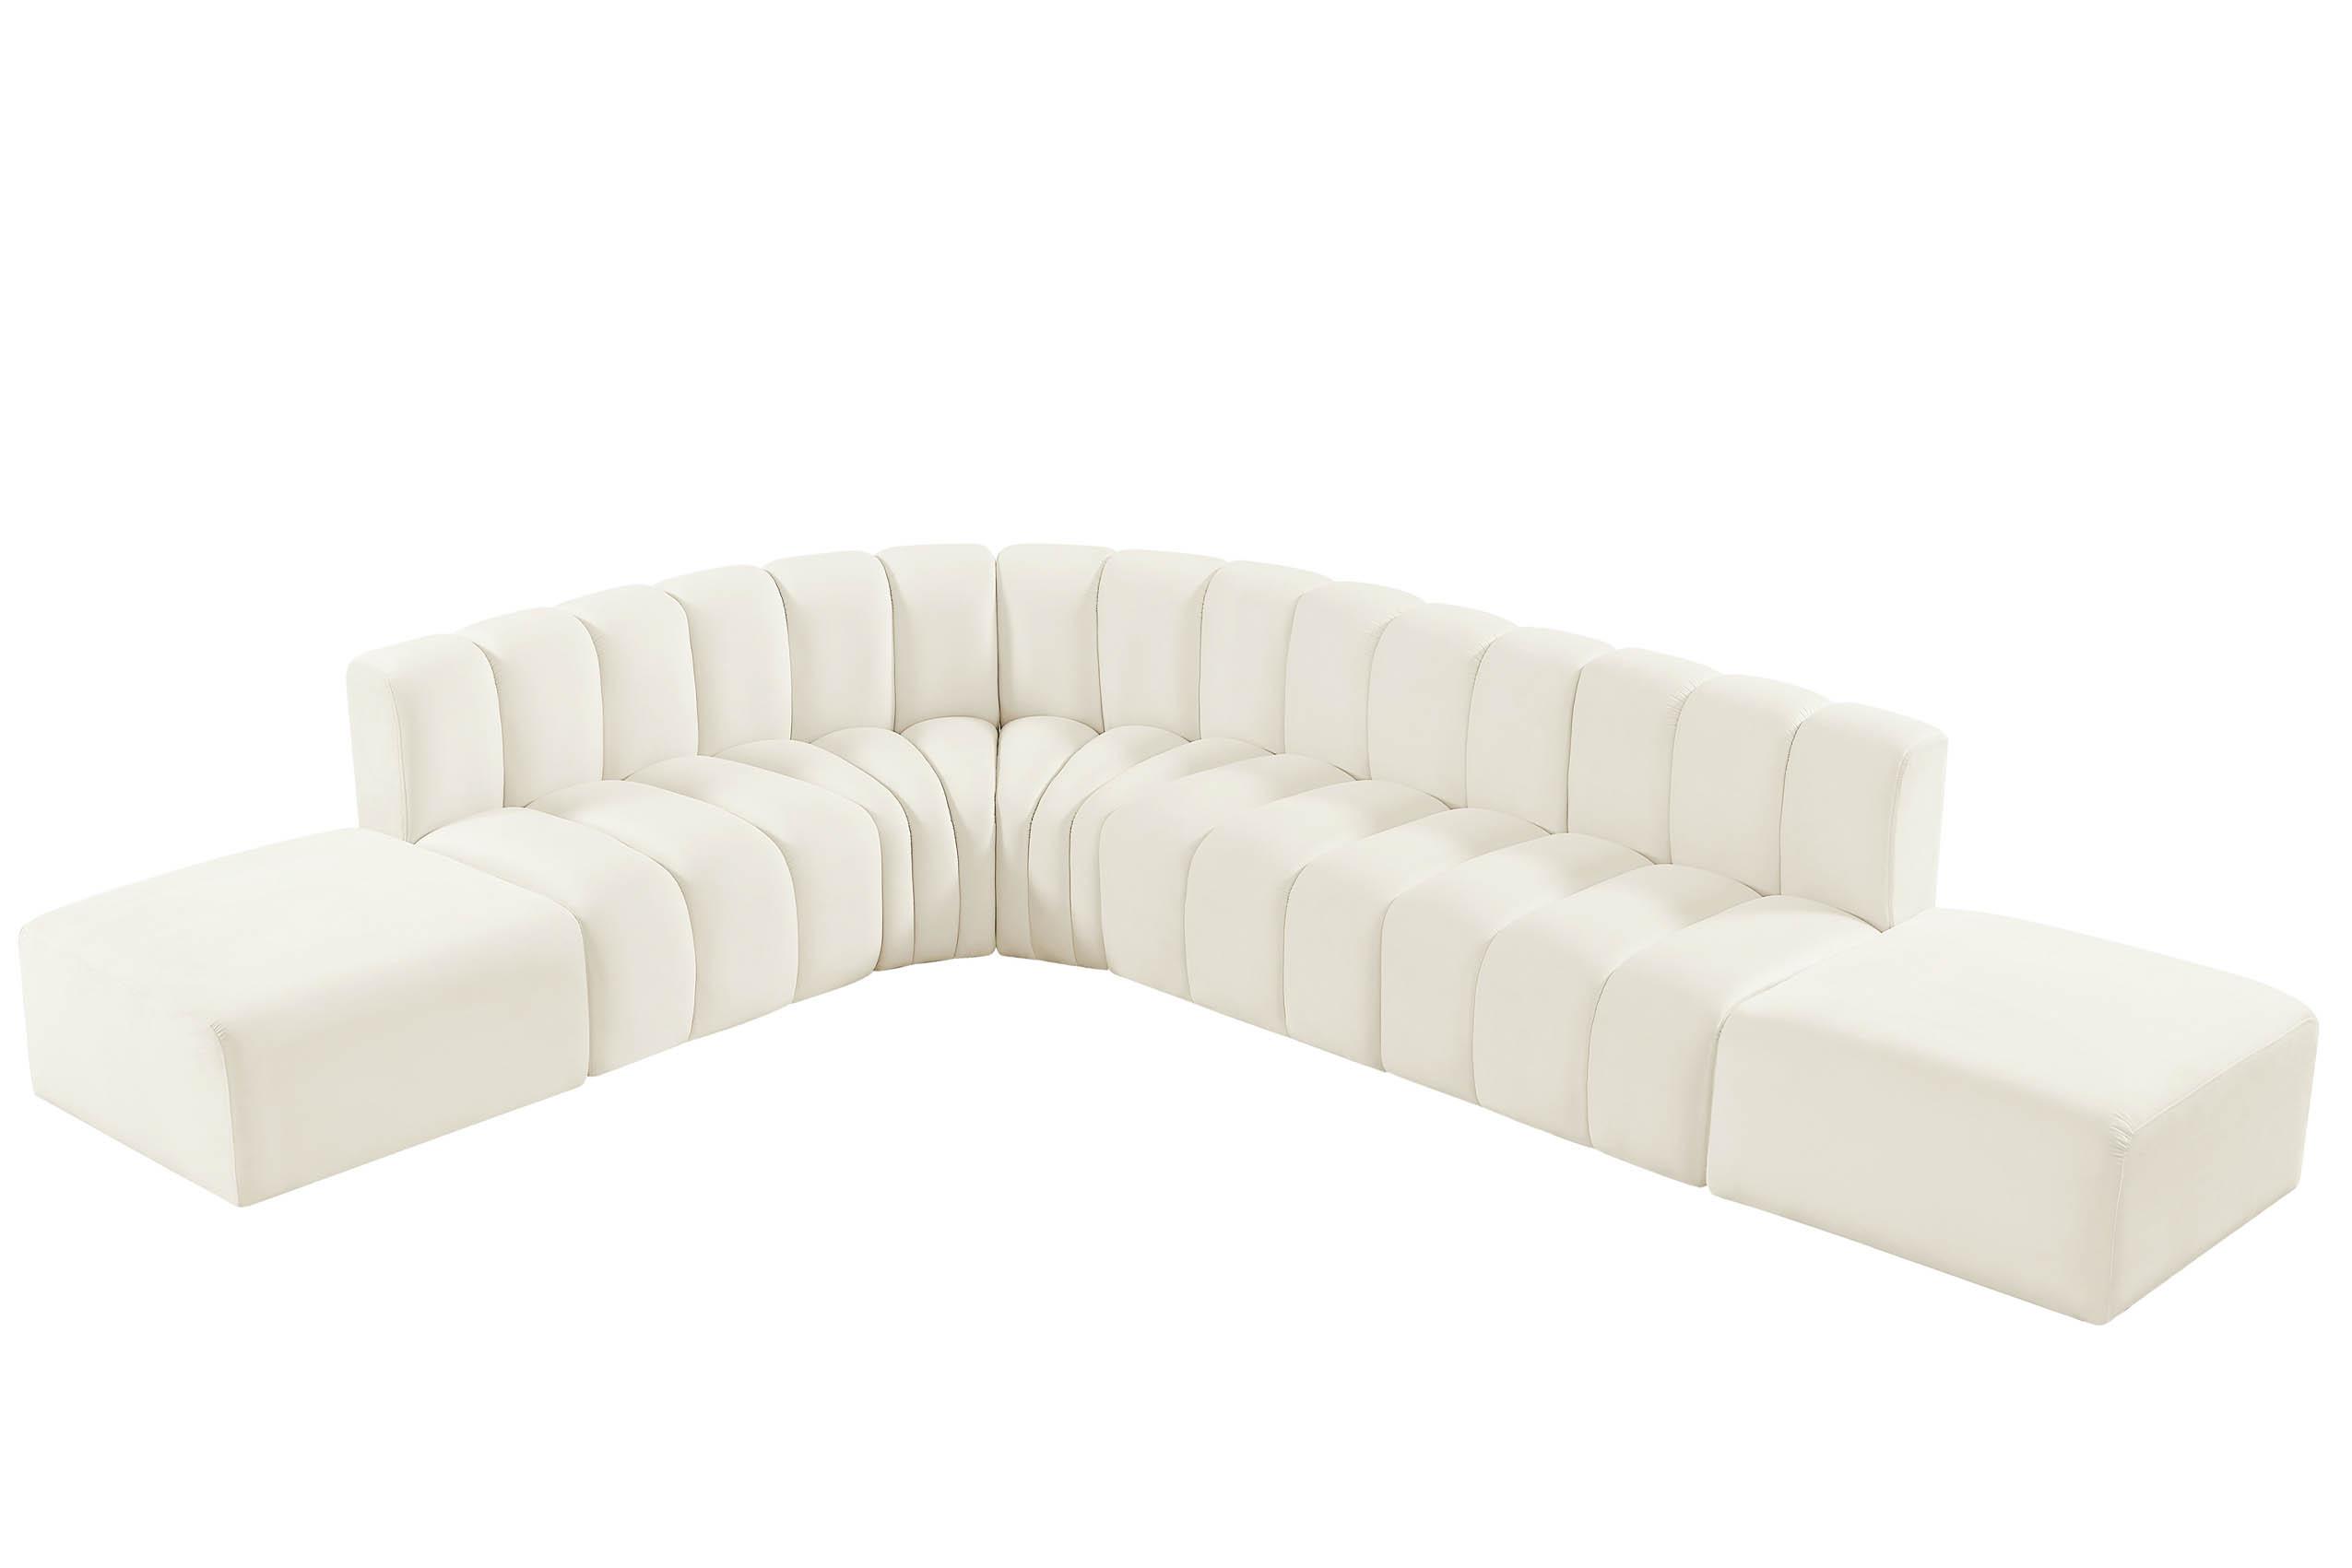 Contemporary, Modern Modular Sectional Sofa ARC 103Cream-S7A 103Cream-S7A in Cream Velvet